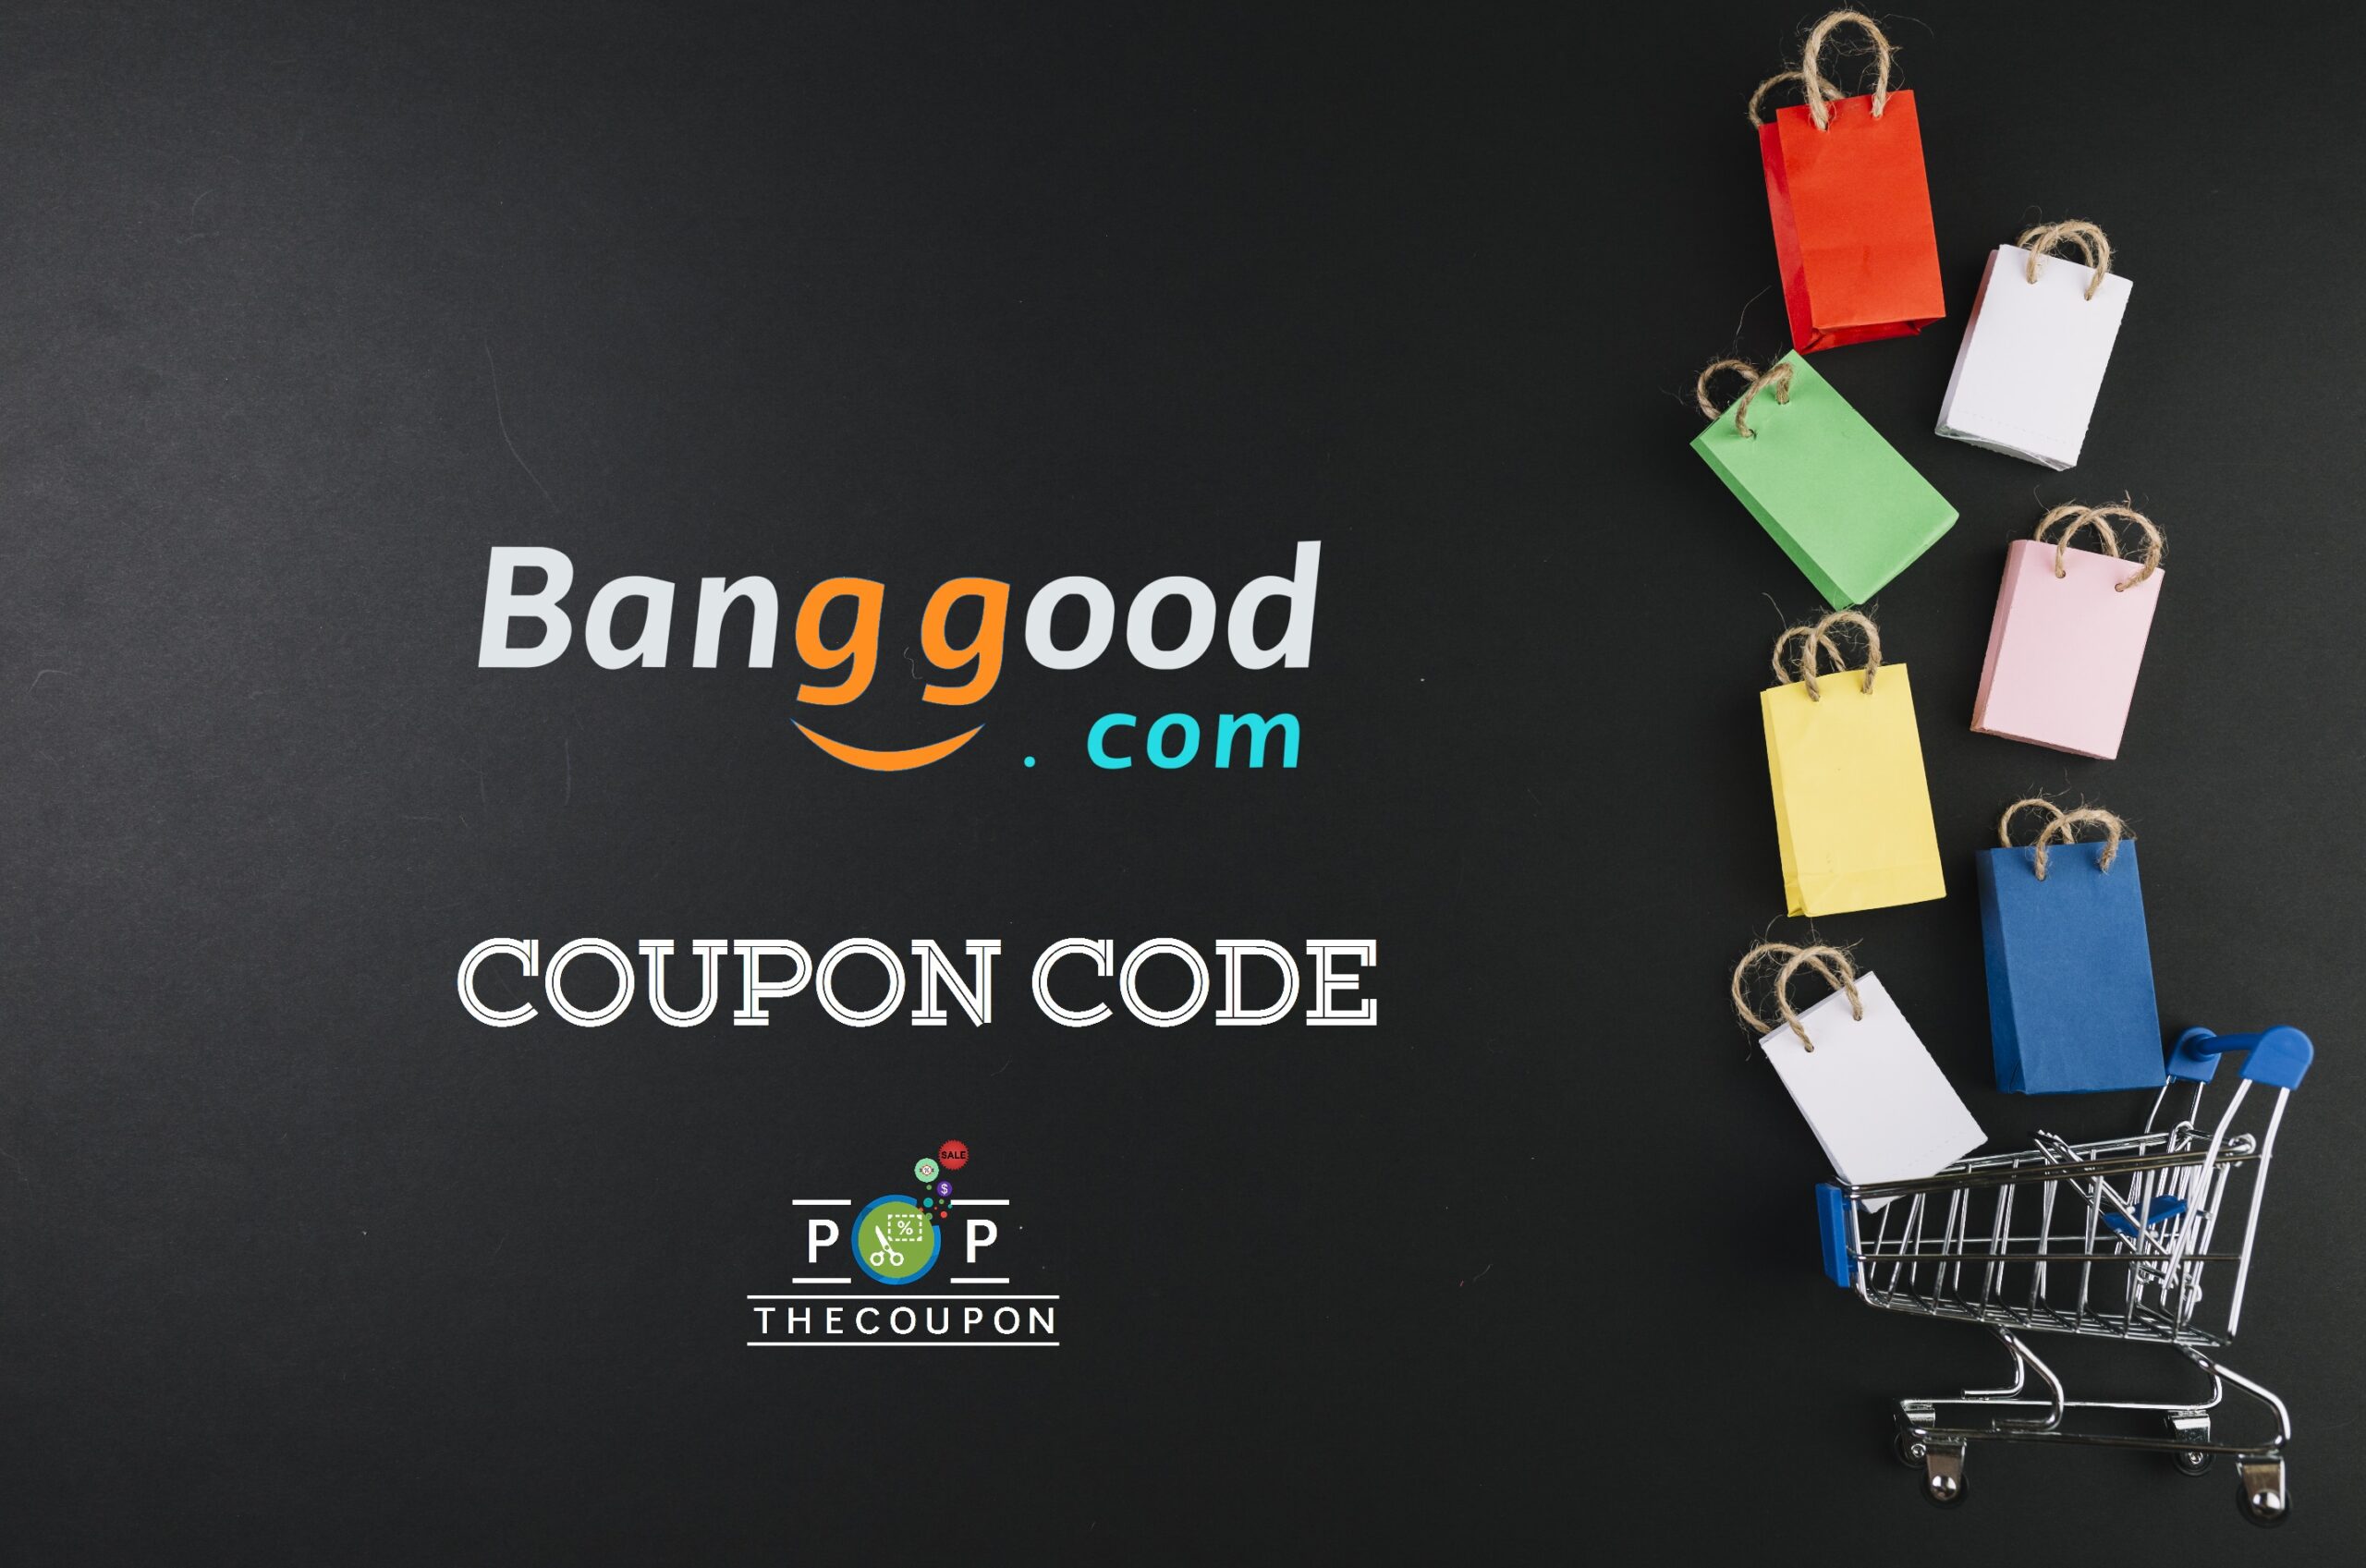 Banggood 2021 Coupon Code 11.11 Save up to 40% Off